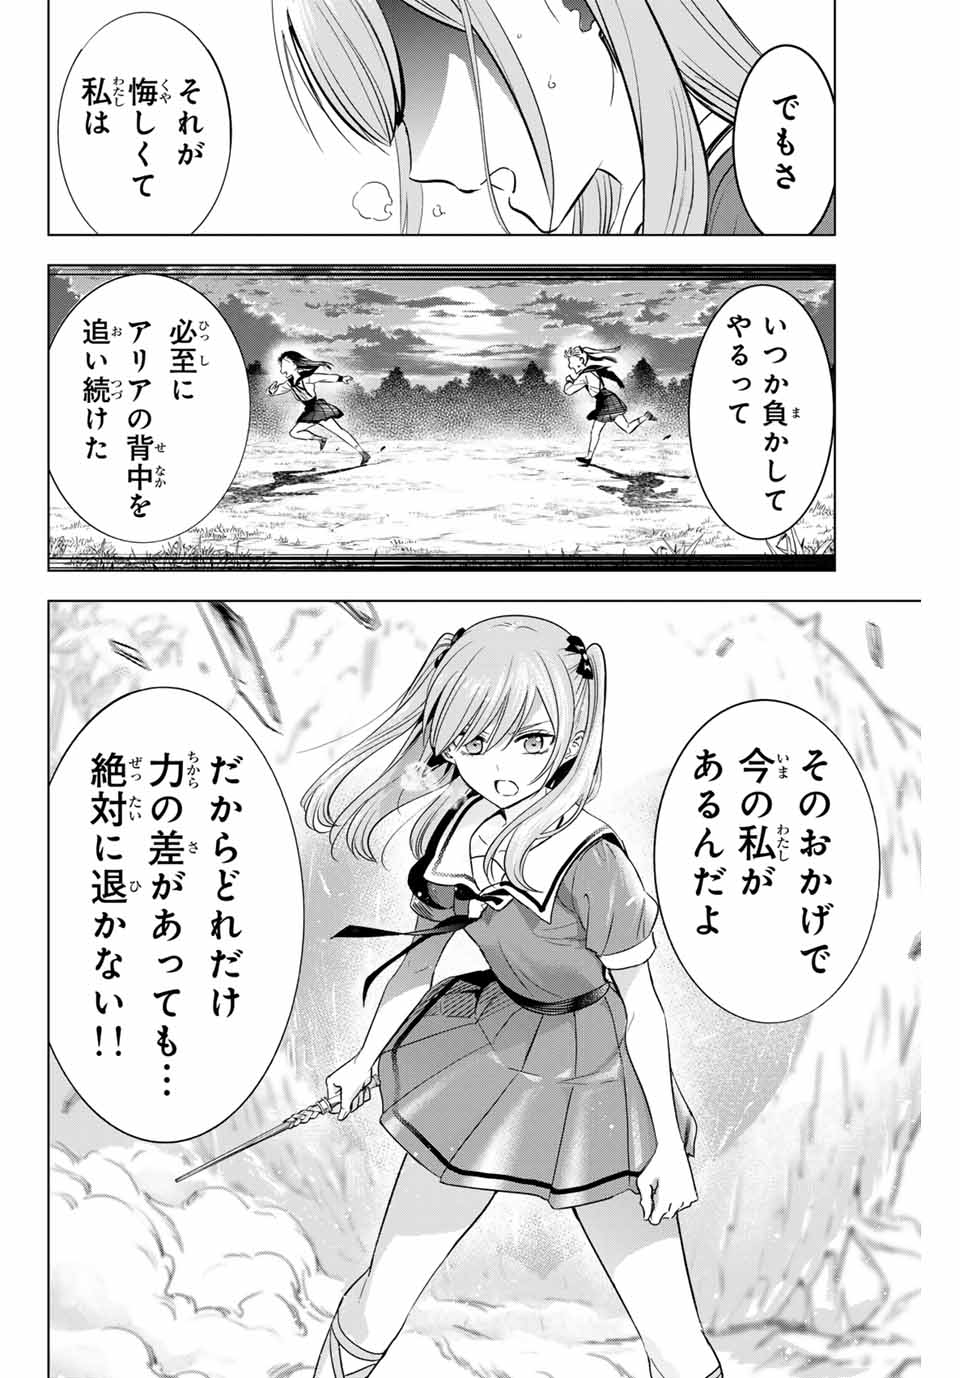 Kuroneko to Majo no Kyoushitsu - Chapter 54 - Page 20